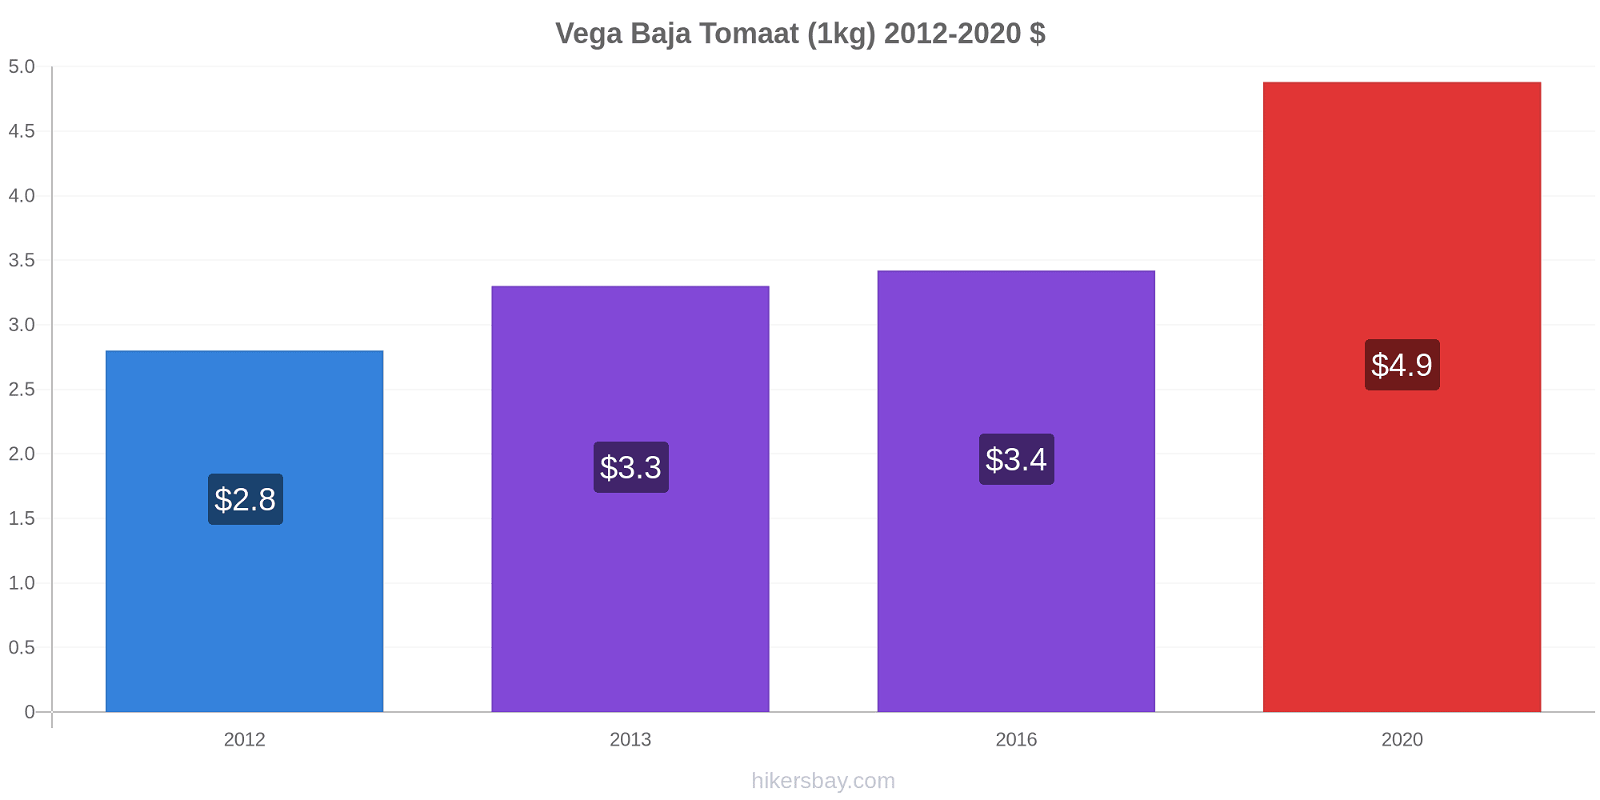 Vega Baja prijswijzigingen Tomaat (1kg) hikersbay.com